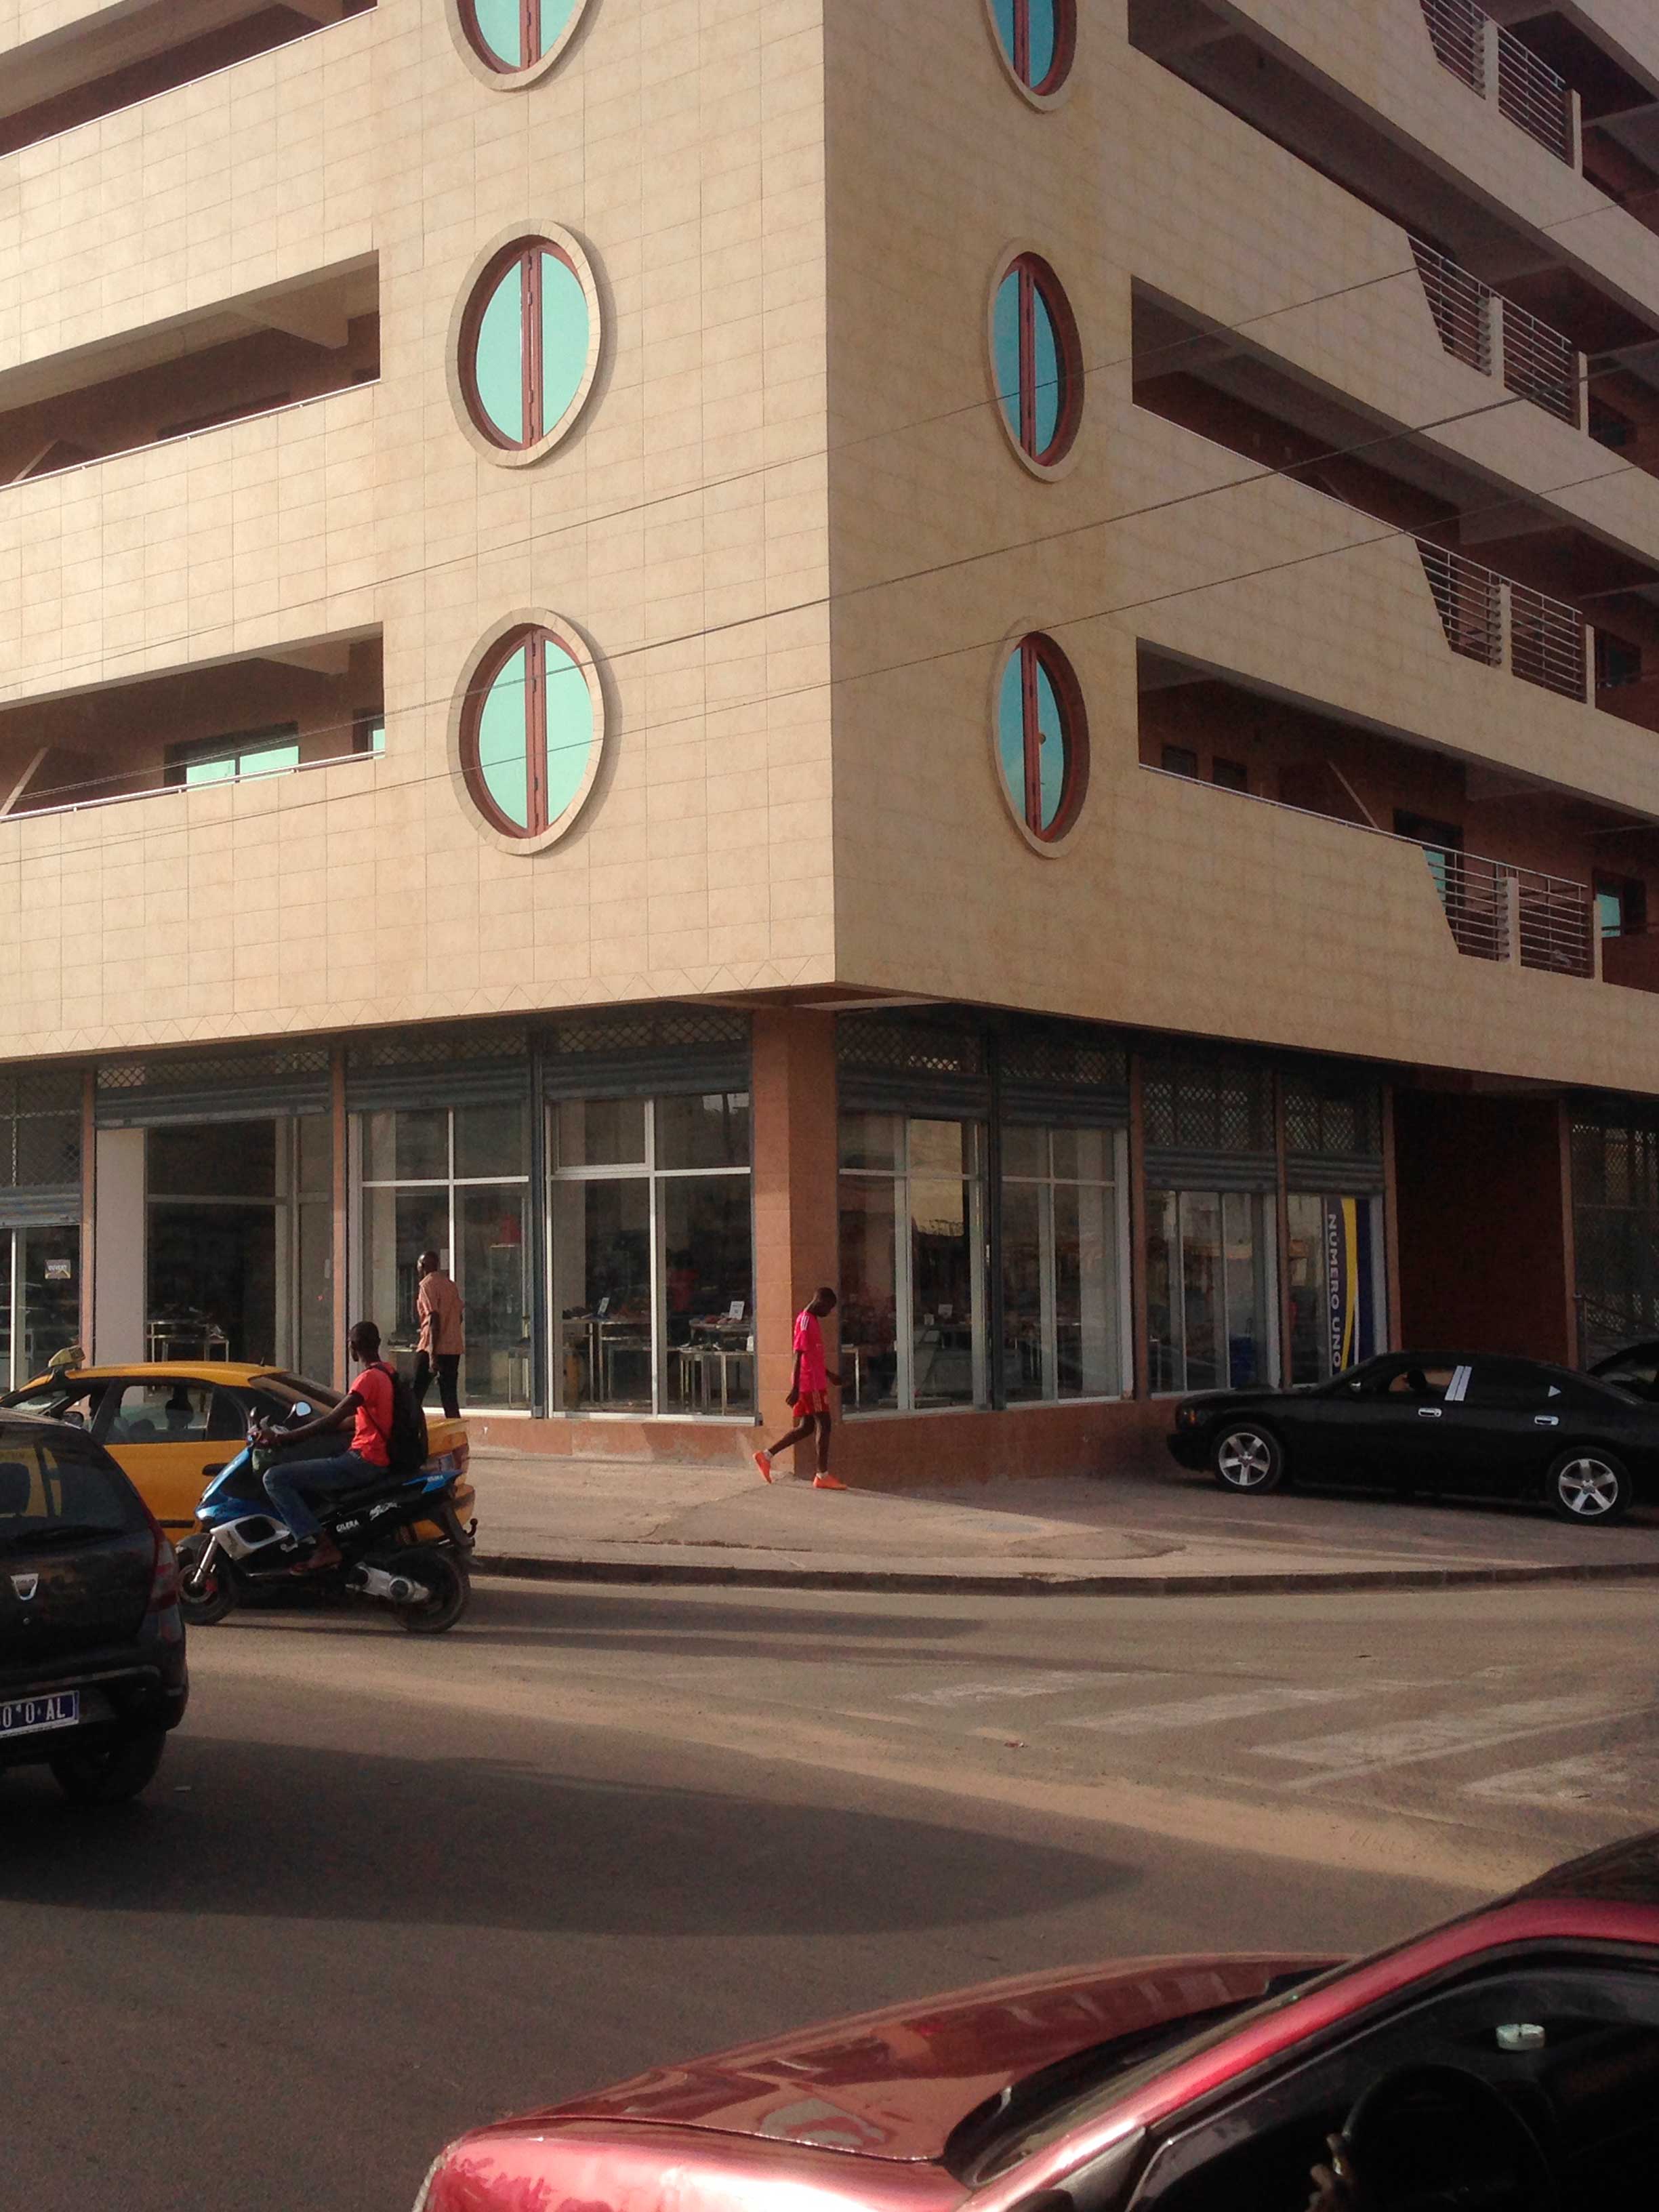 Immeuble Alé Seck - Cabinet d'architecture, Malick Mbow - Archi Concept International - Dakar, Sénégal